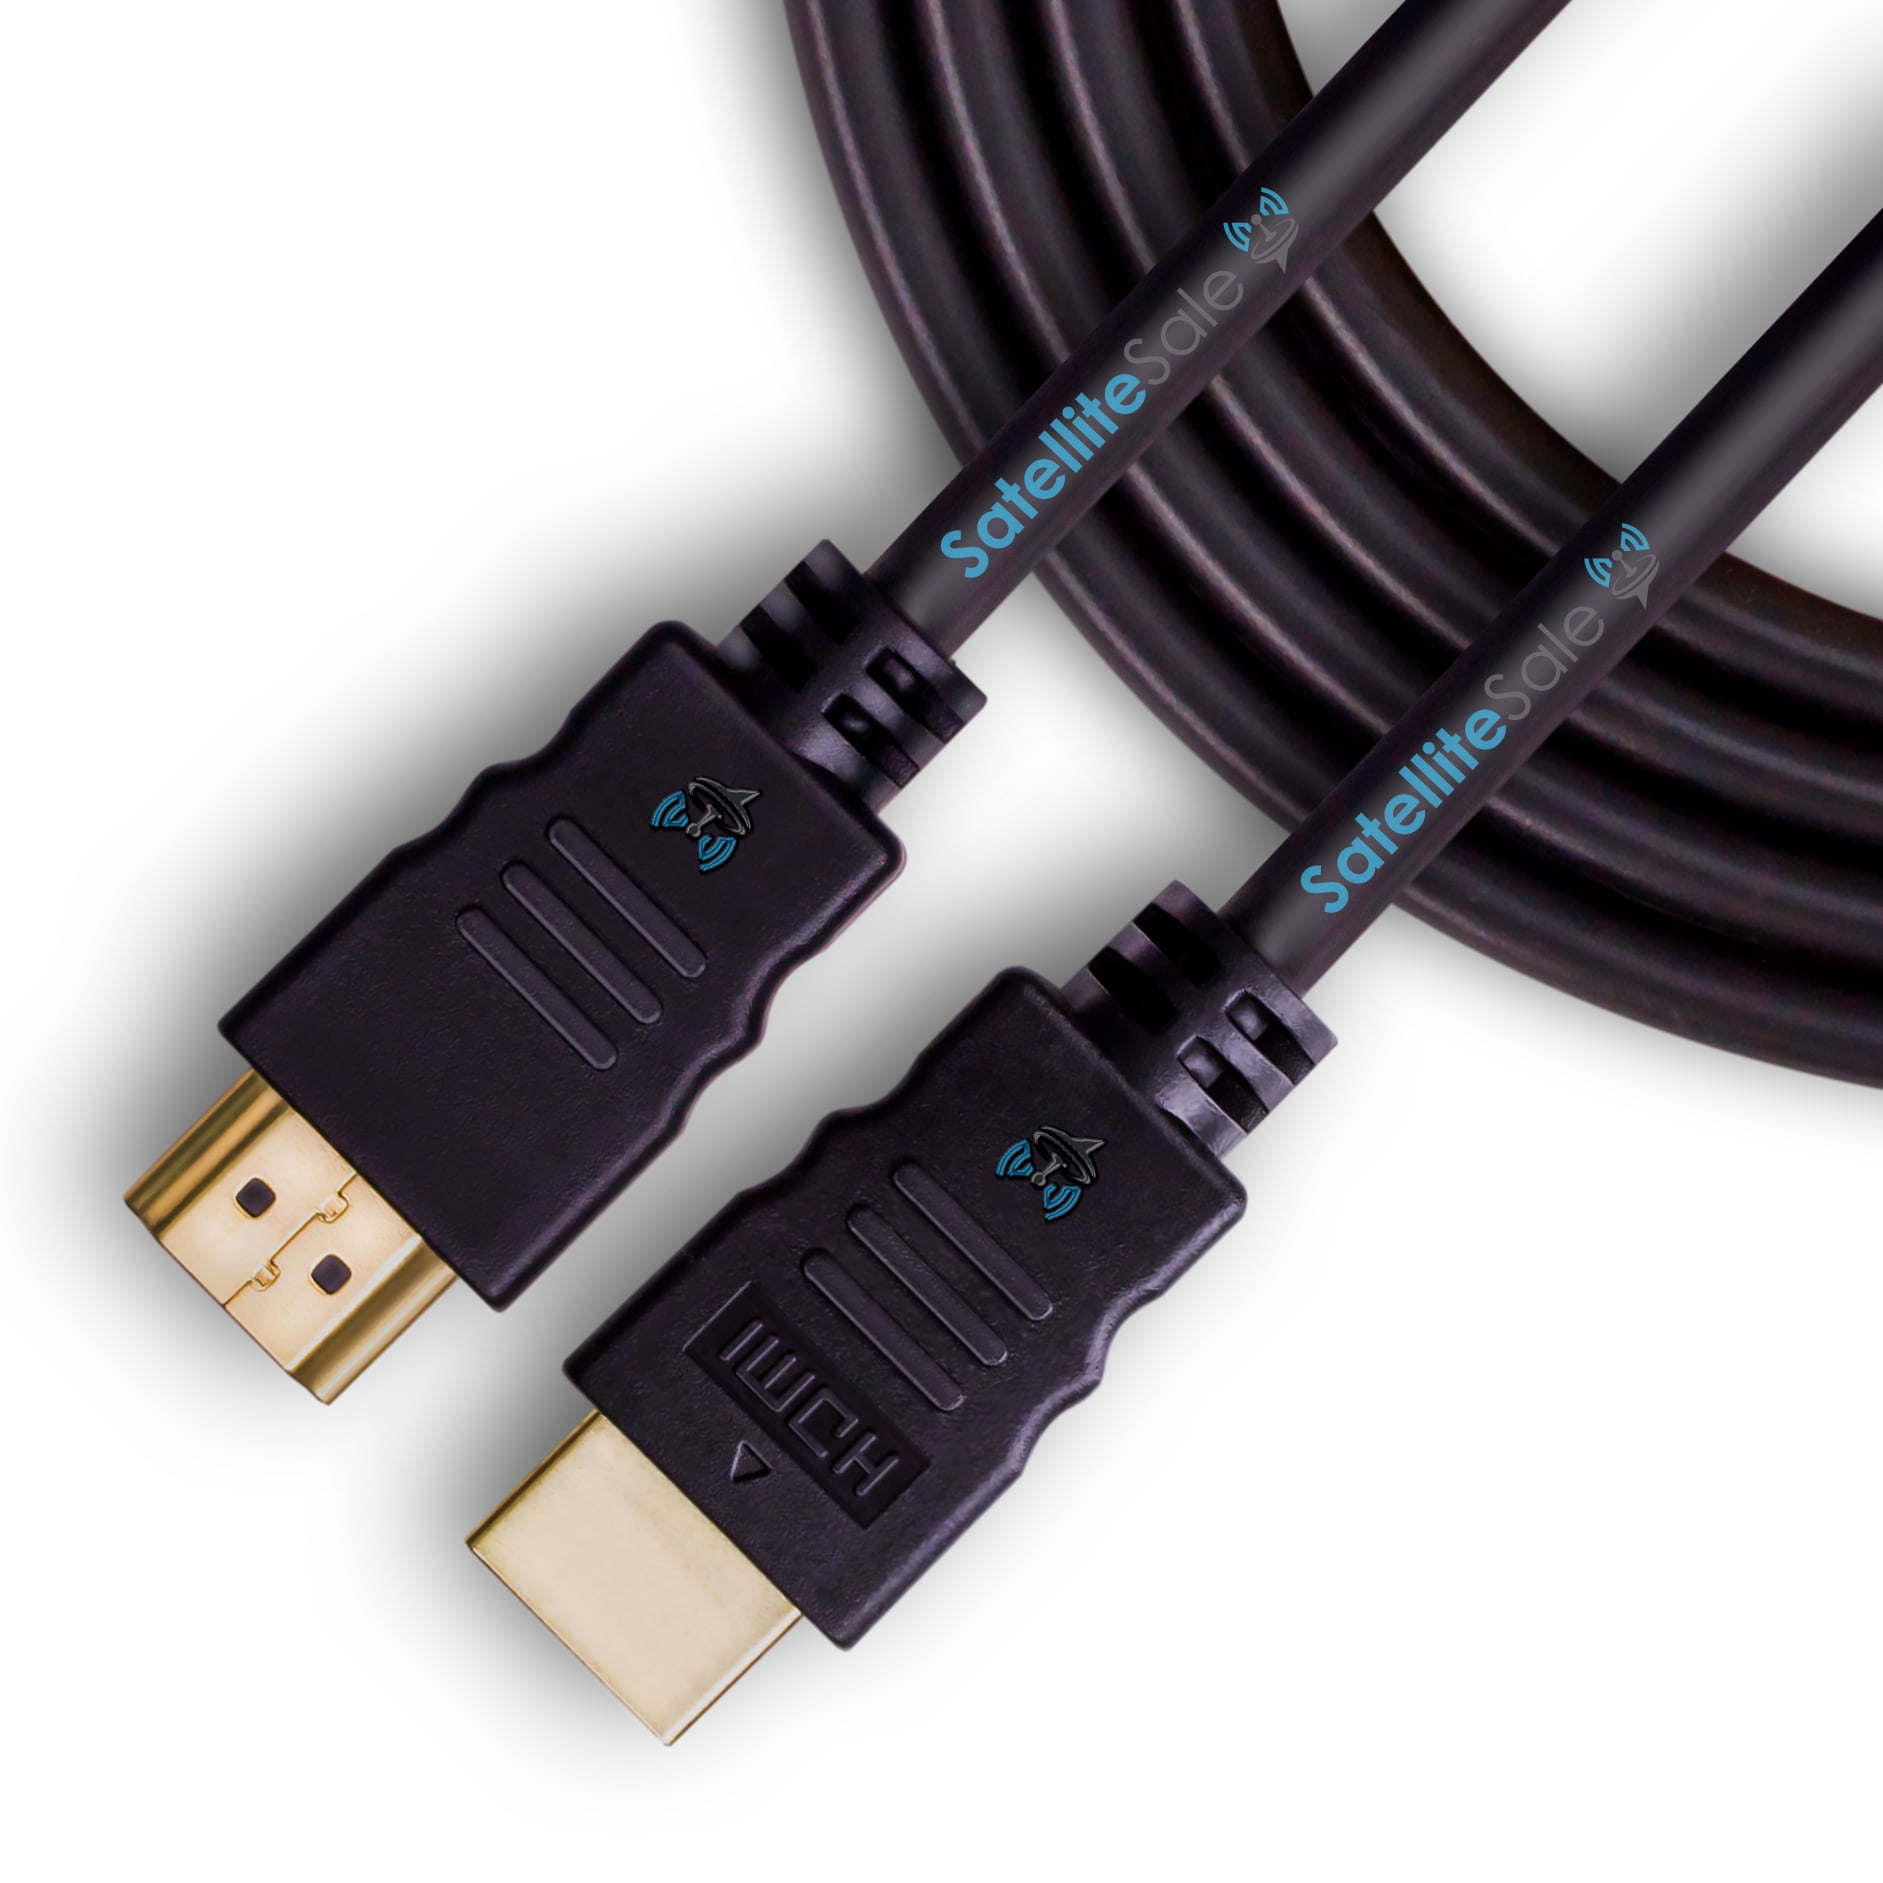 Panama Games - Cable HDMI de Alta Velocidad [Largo 6'] [Negro]